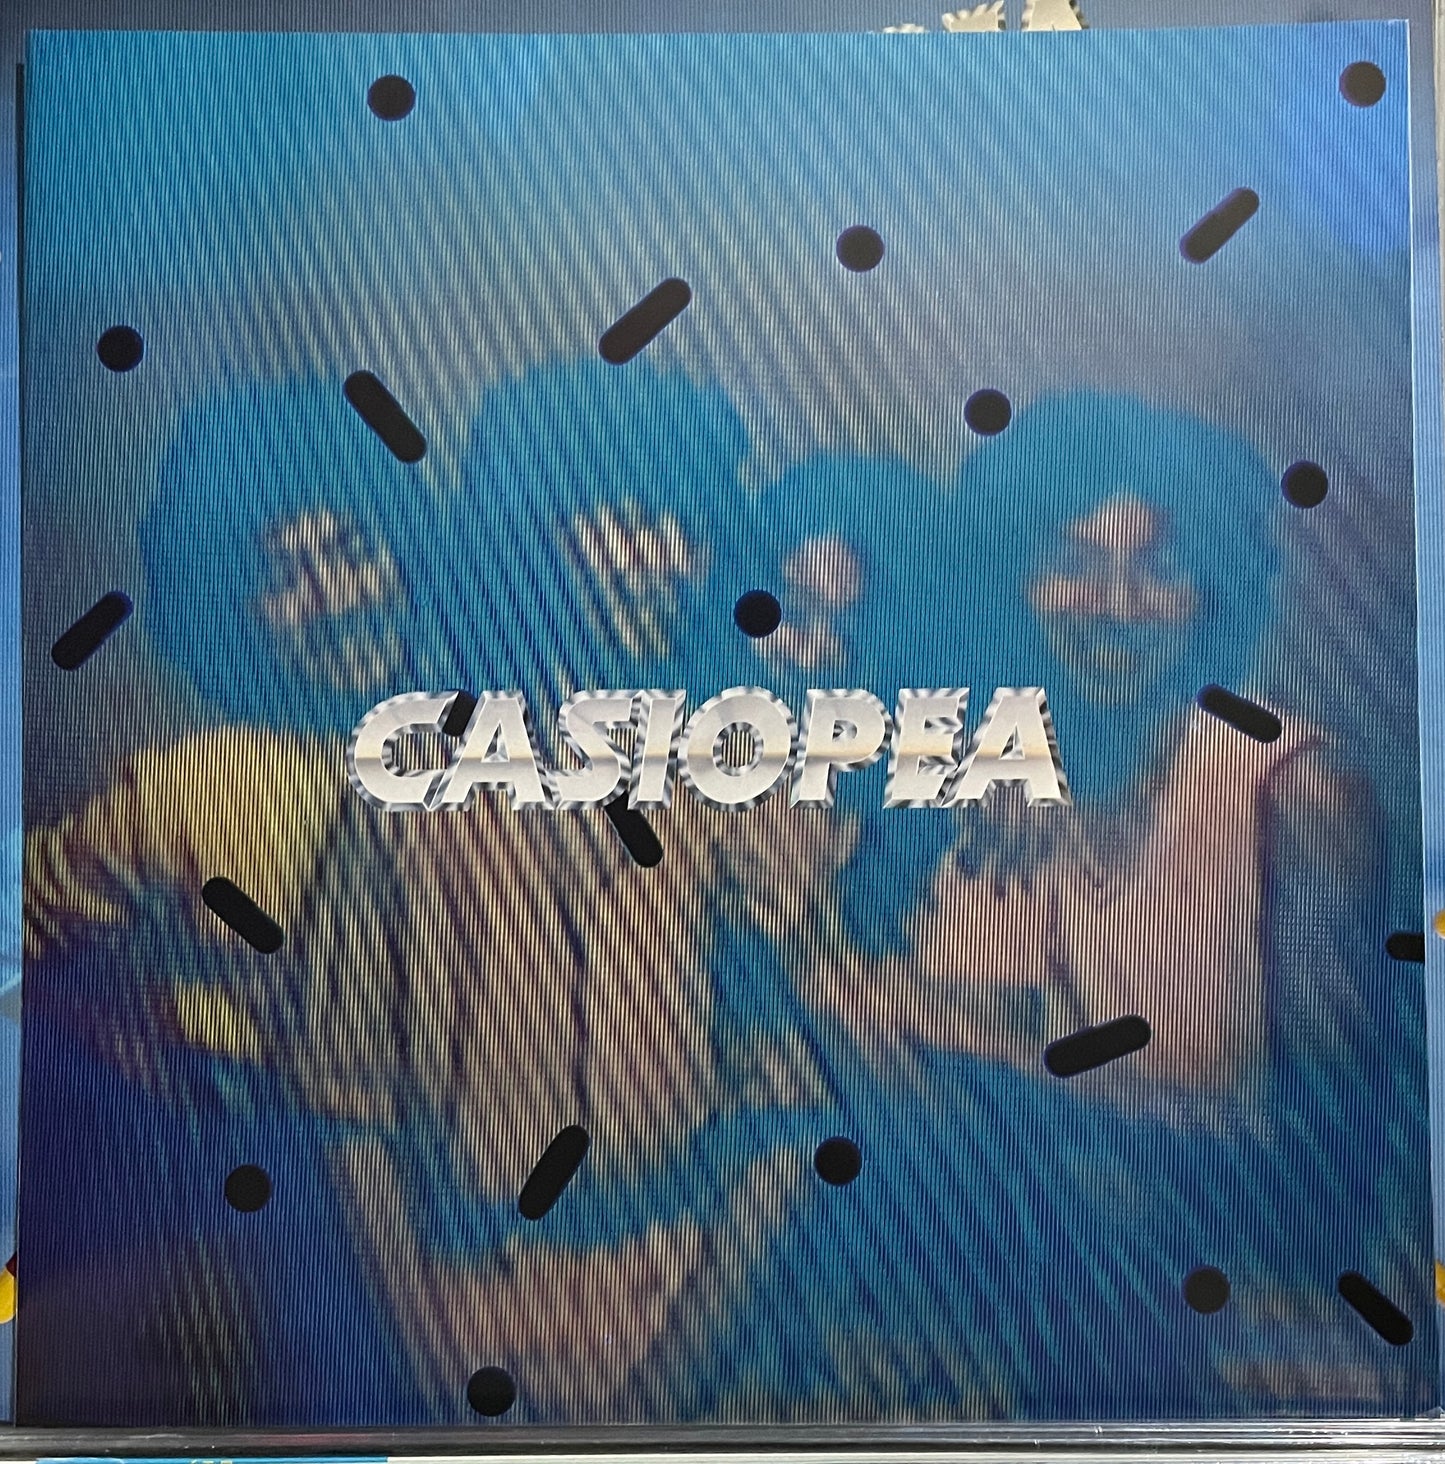 Casiopea “Casiopea” (1979)